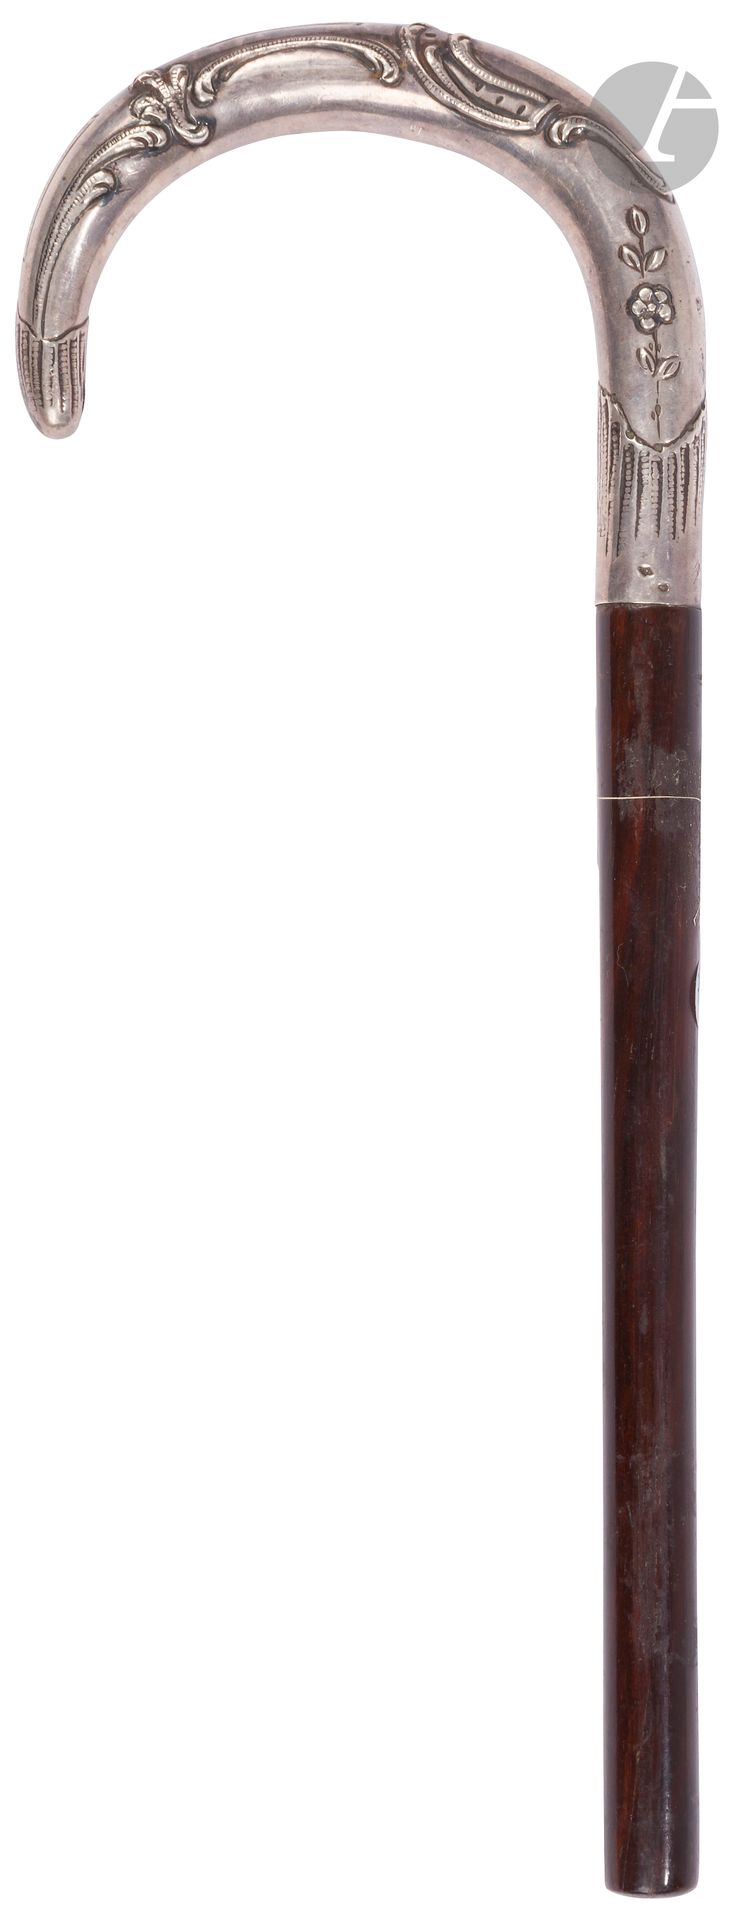 Null Bastón con mango Milord repujado en plata.
Longitud: 22 cm (eje cortado).